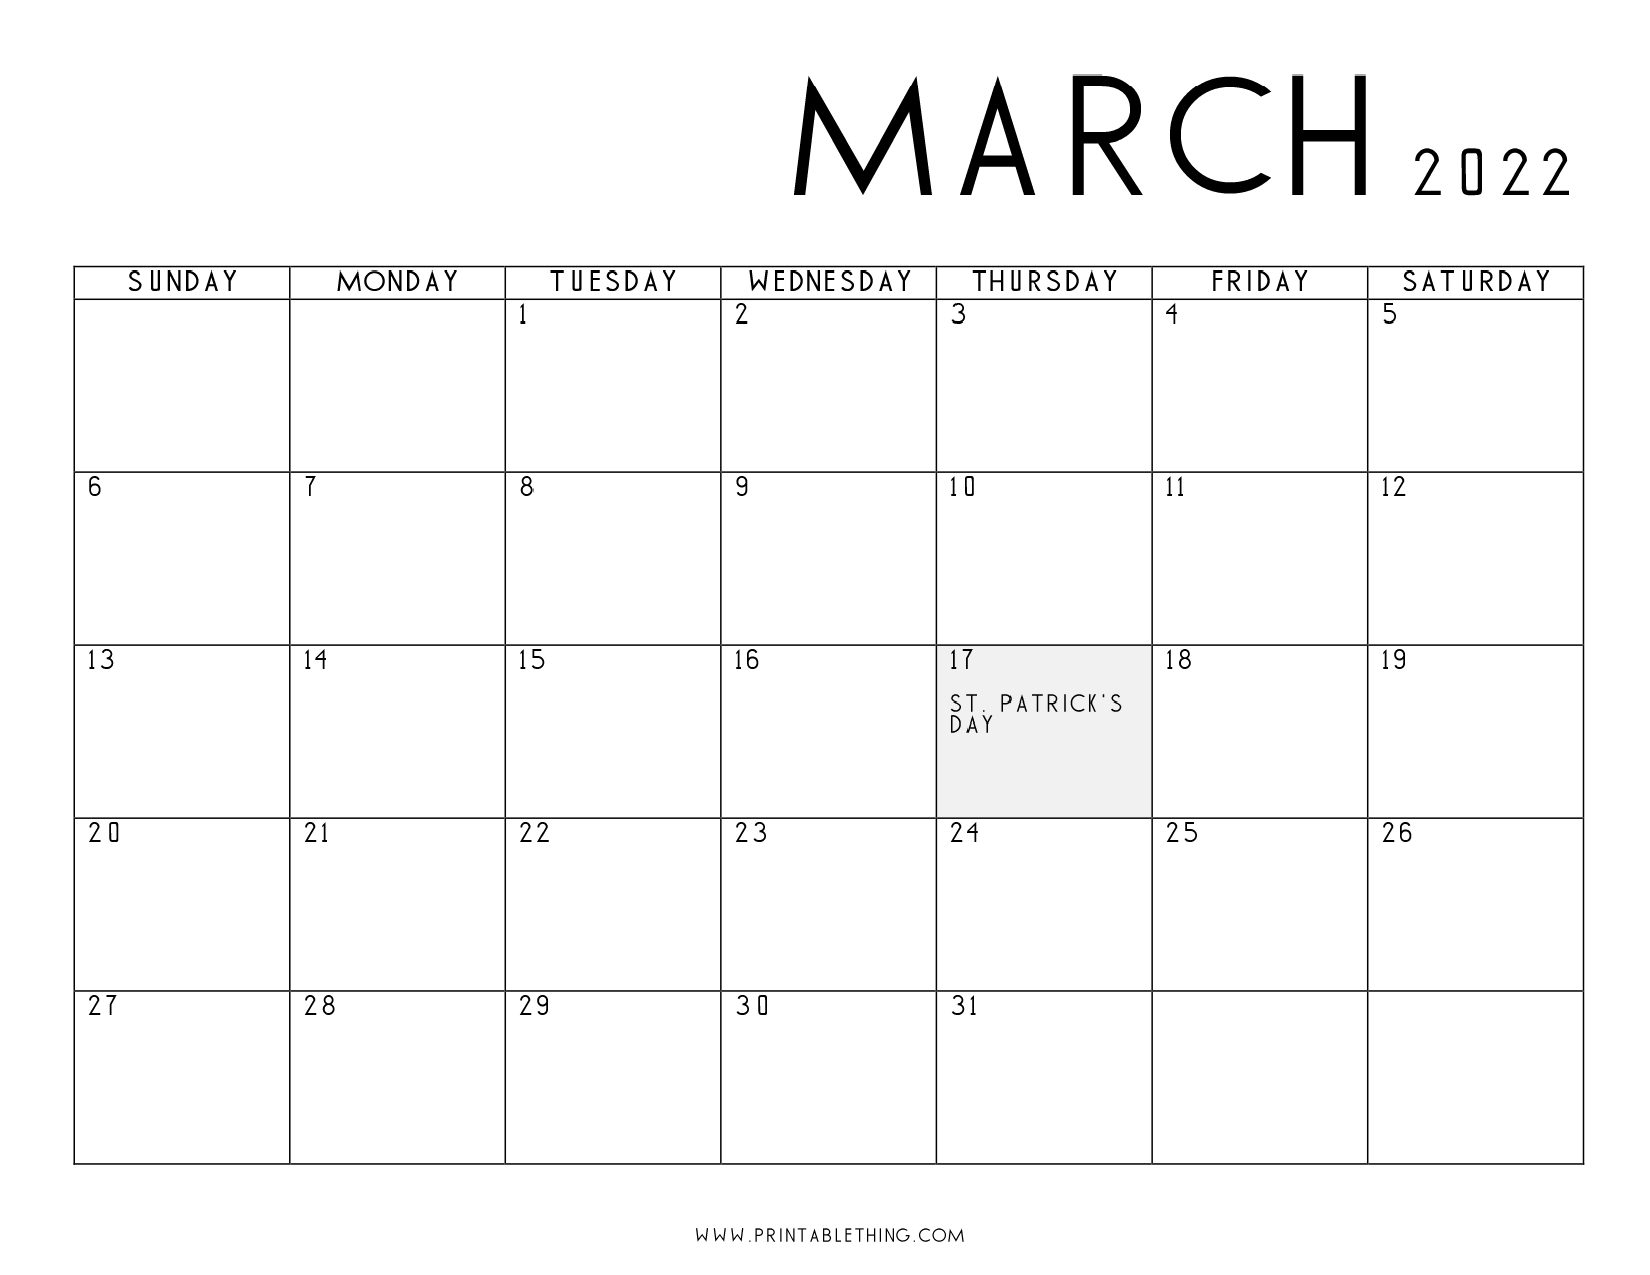 Catch Calendar 2022 February March